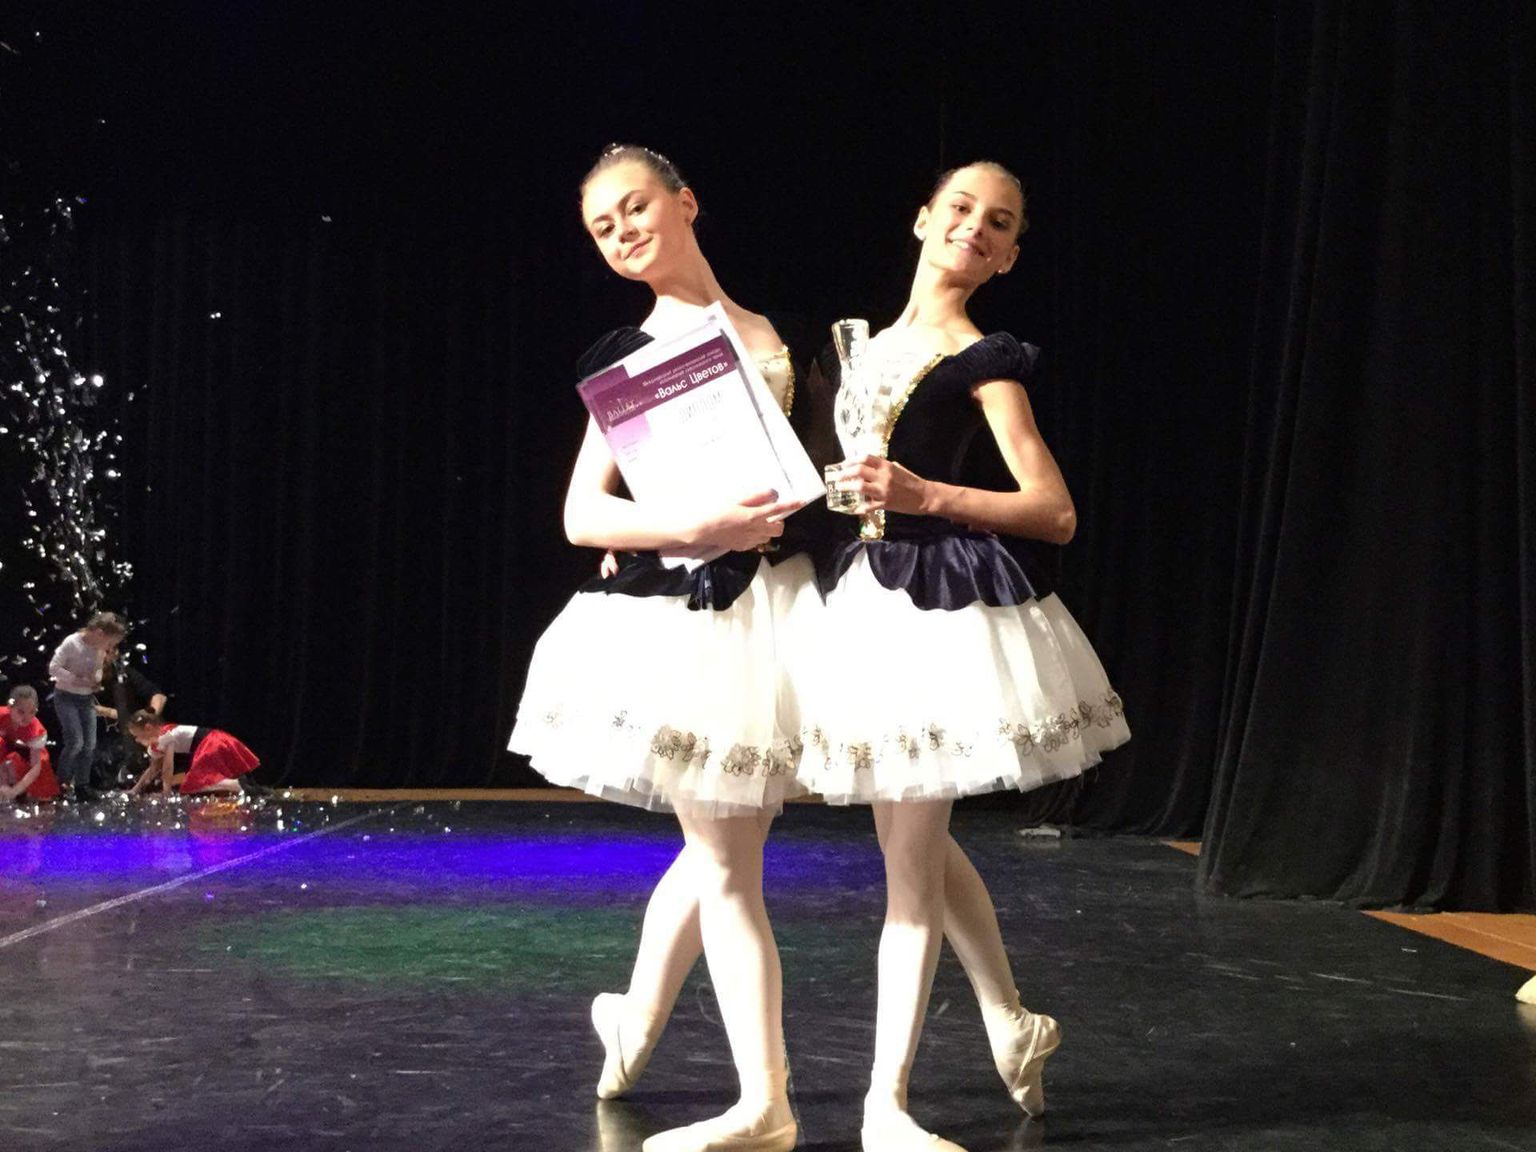 Auhinnatud balletiduo Jette Pruulmann (vasakult) ja Doris Keernik Peterburis.